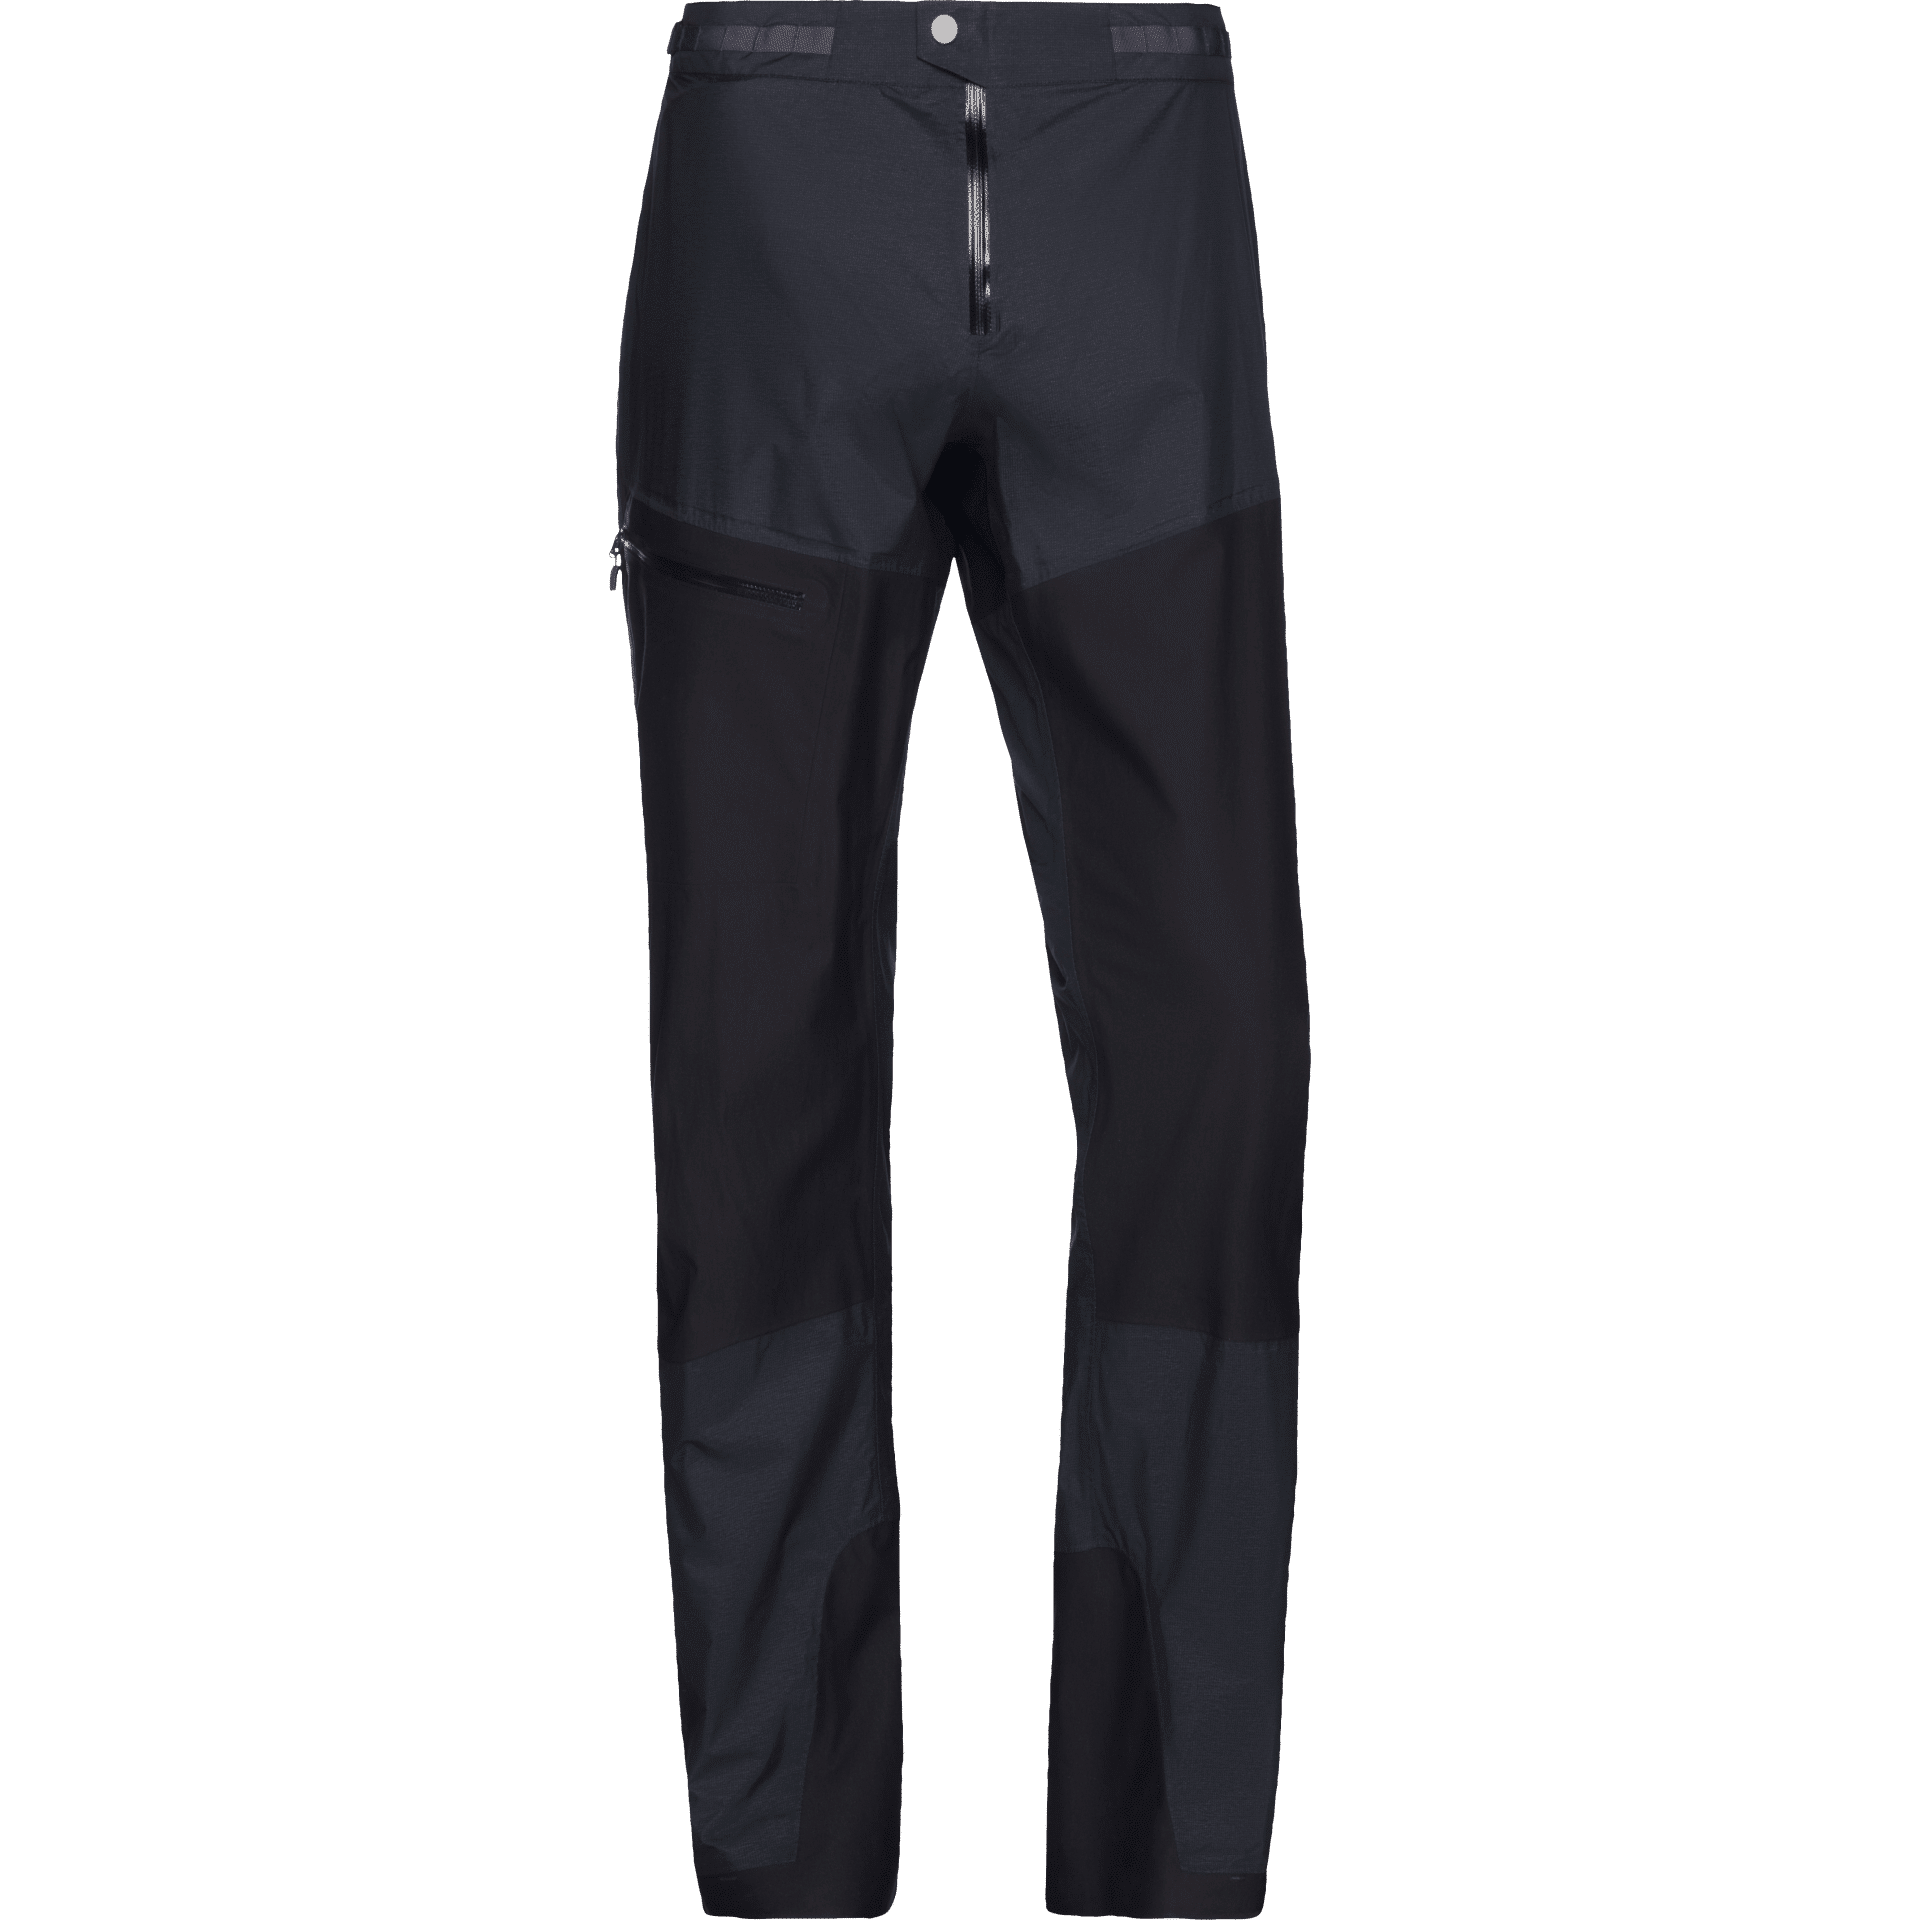 Norrøna Bitihorn Dri1 Pants - Pantalón impermeable - Hombre